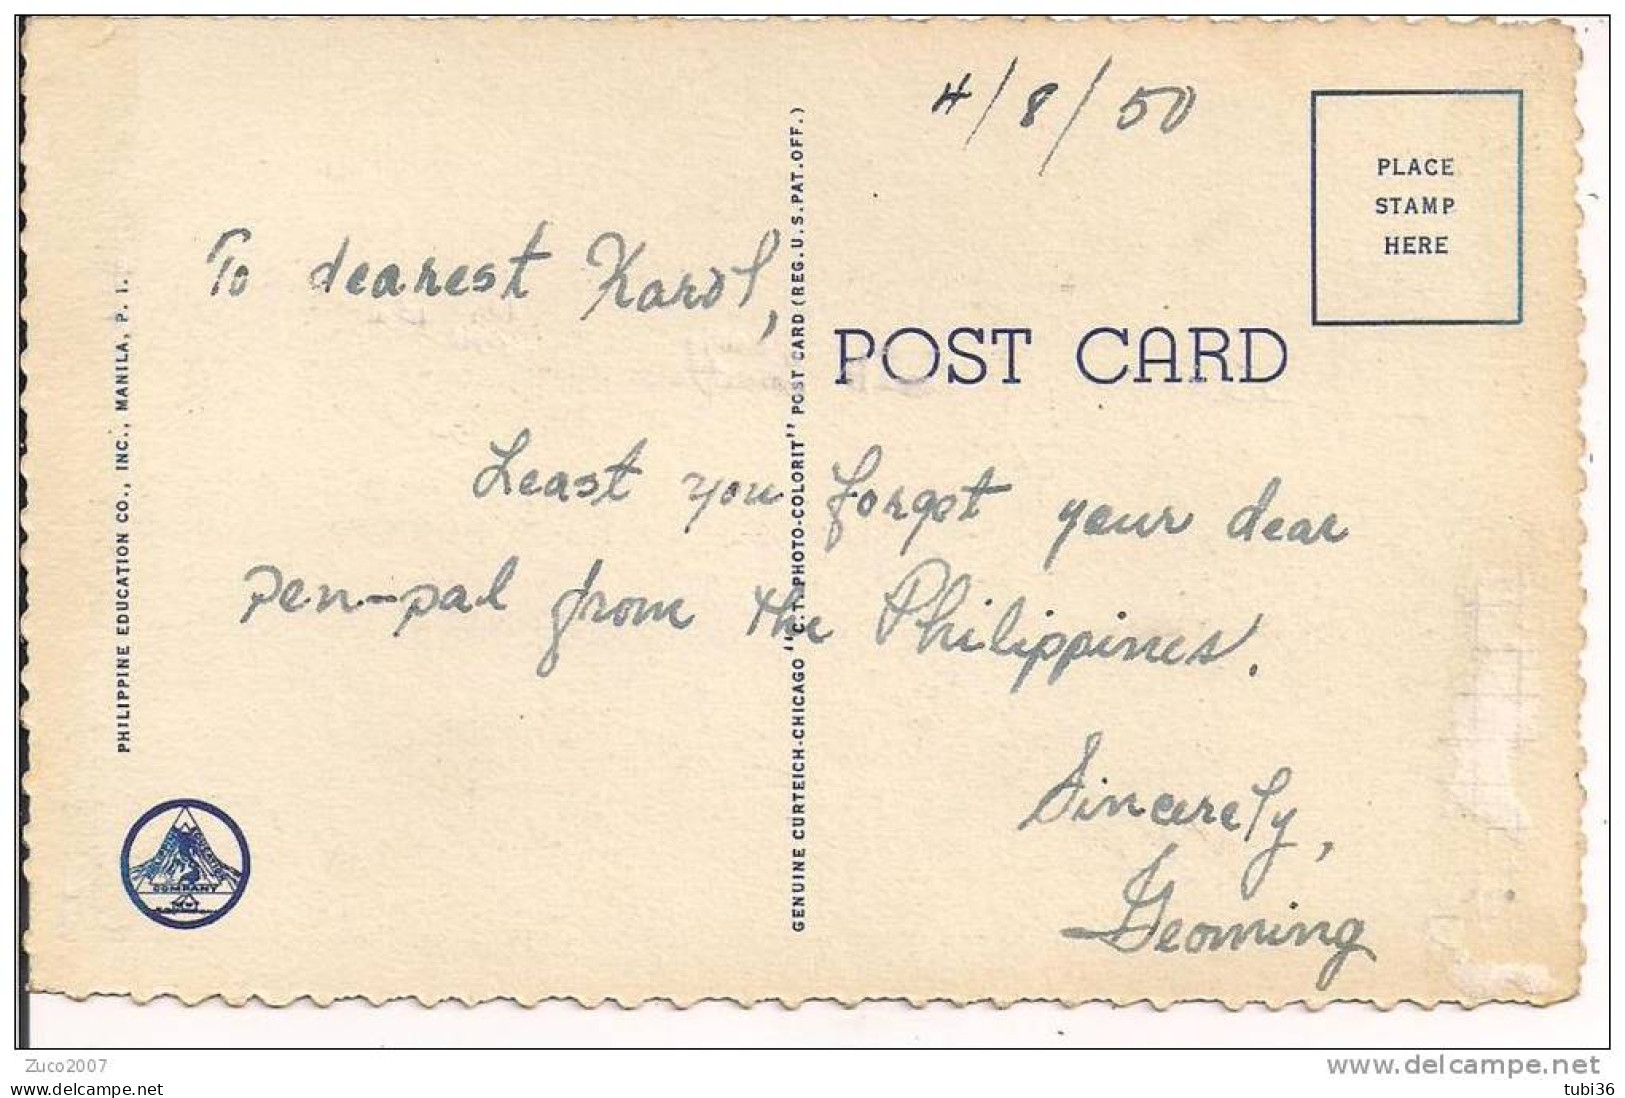 PHILIPPINES, RICE PLANTING, COLORI VIAGGIATA IN BUSTA 1950, FORMATO PICCOLO 9 X 14, - Philippines